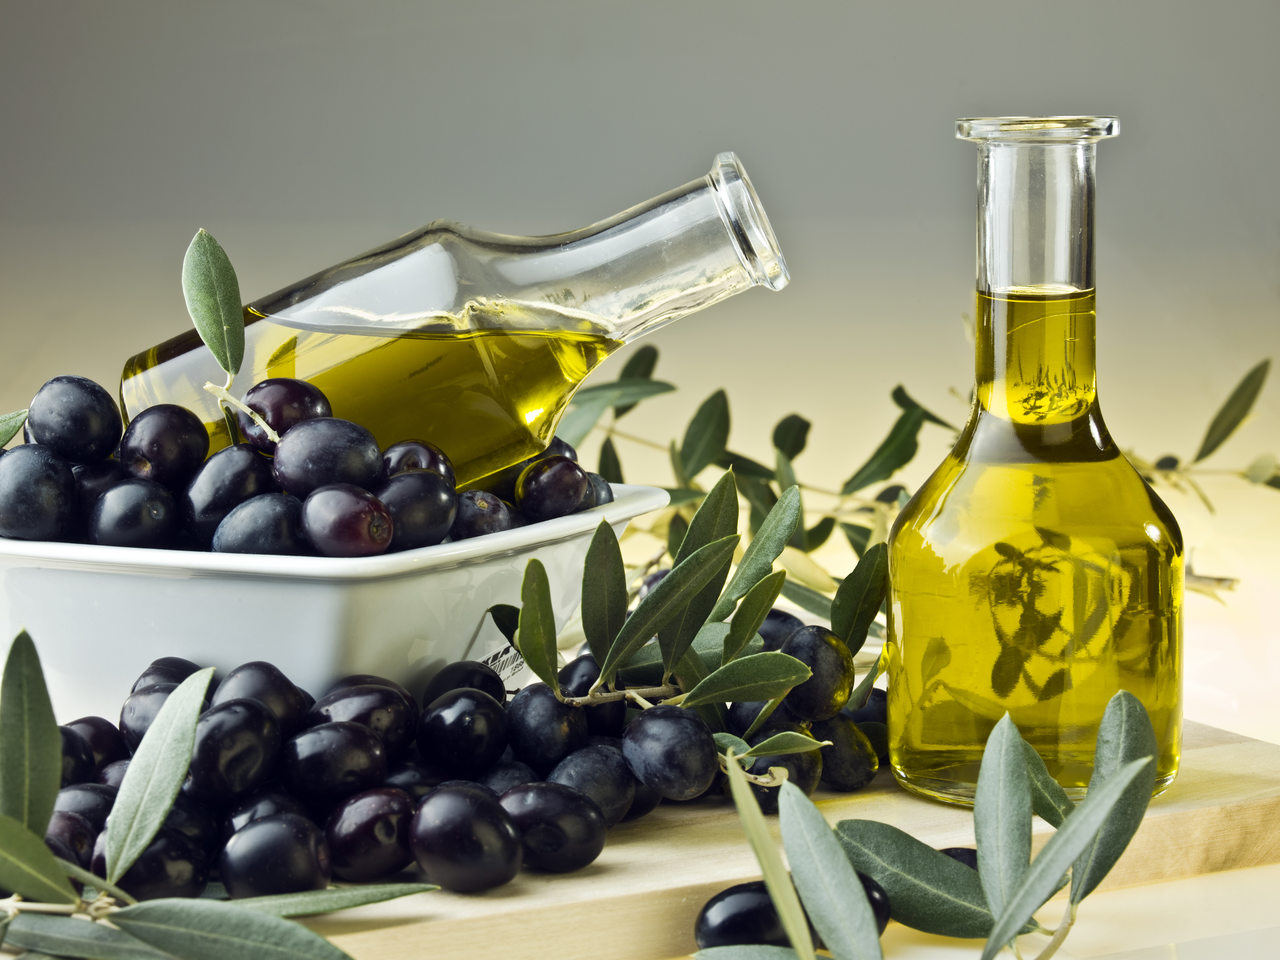 Oliwa z oliwek – właściwości, wartości odżywcze, zastosowanie